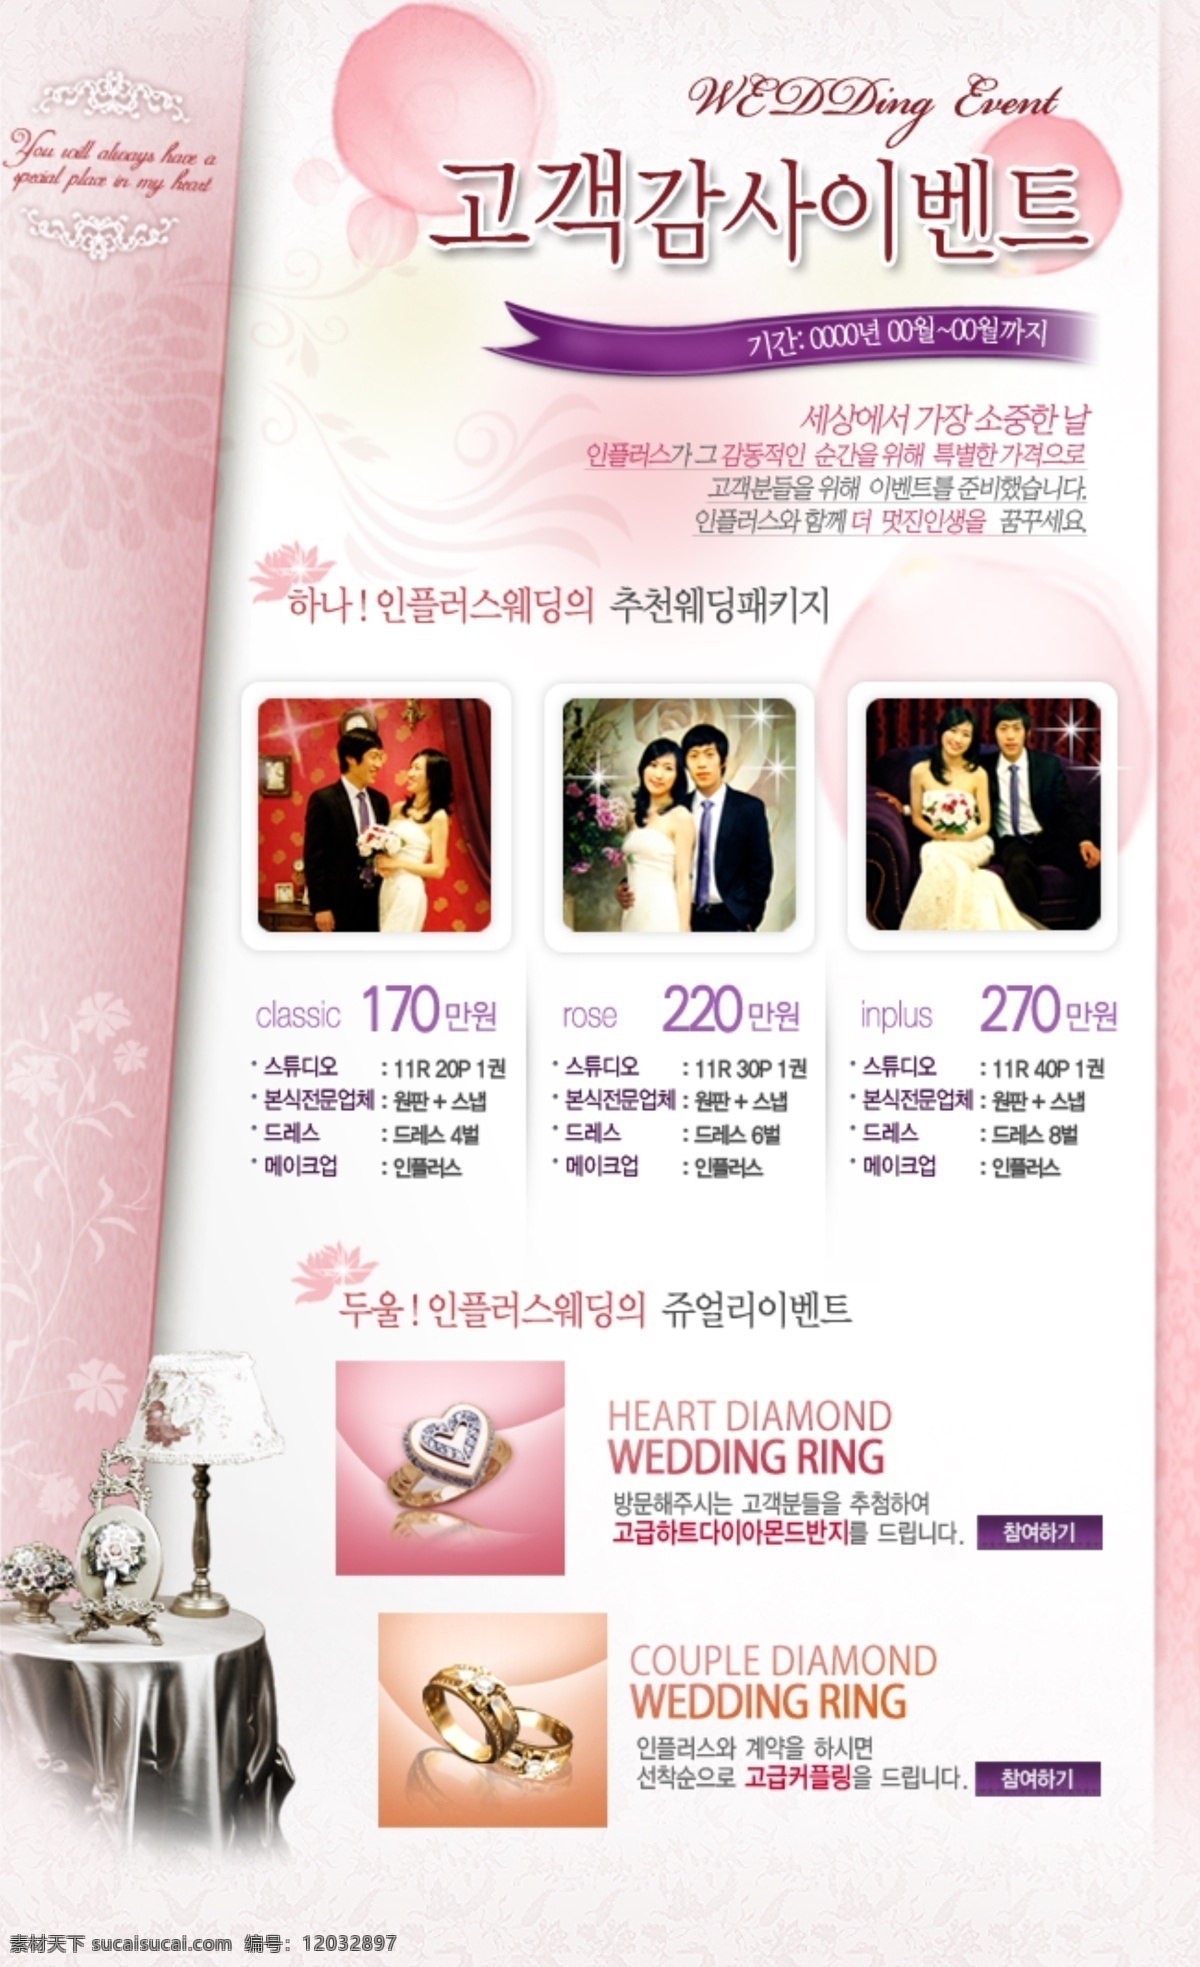 婚礼 婚庆 海报 介绍 网页模板 网页素材